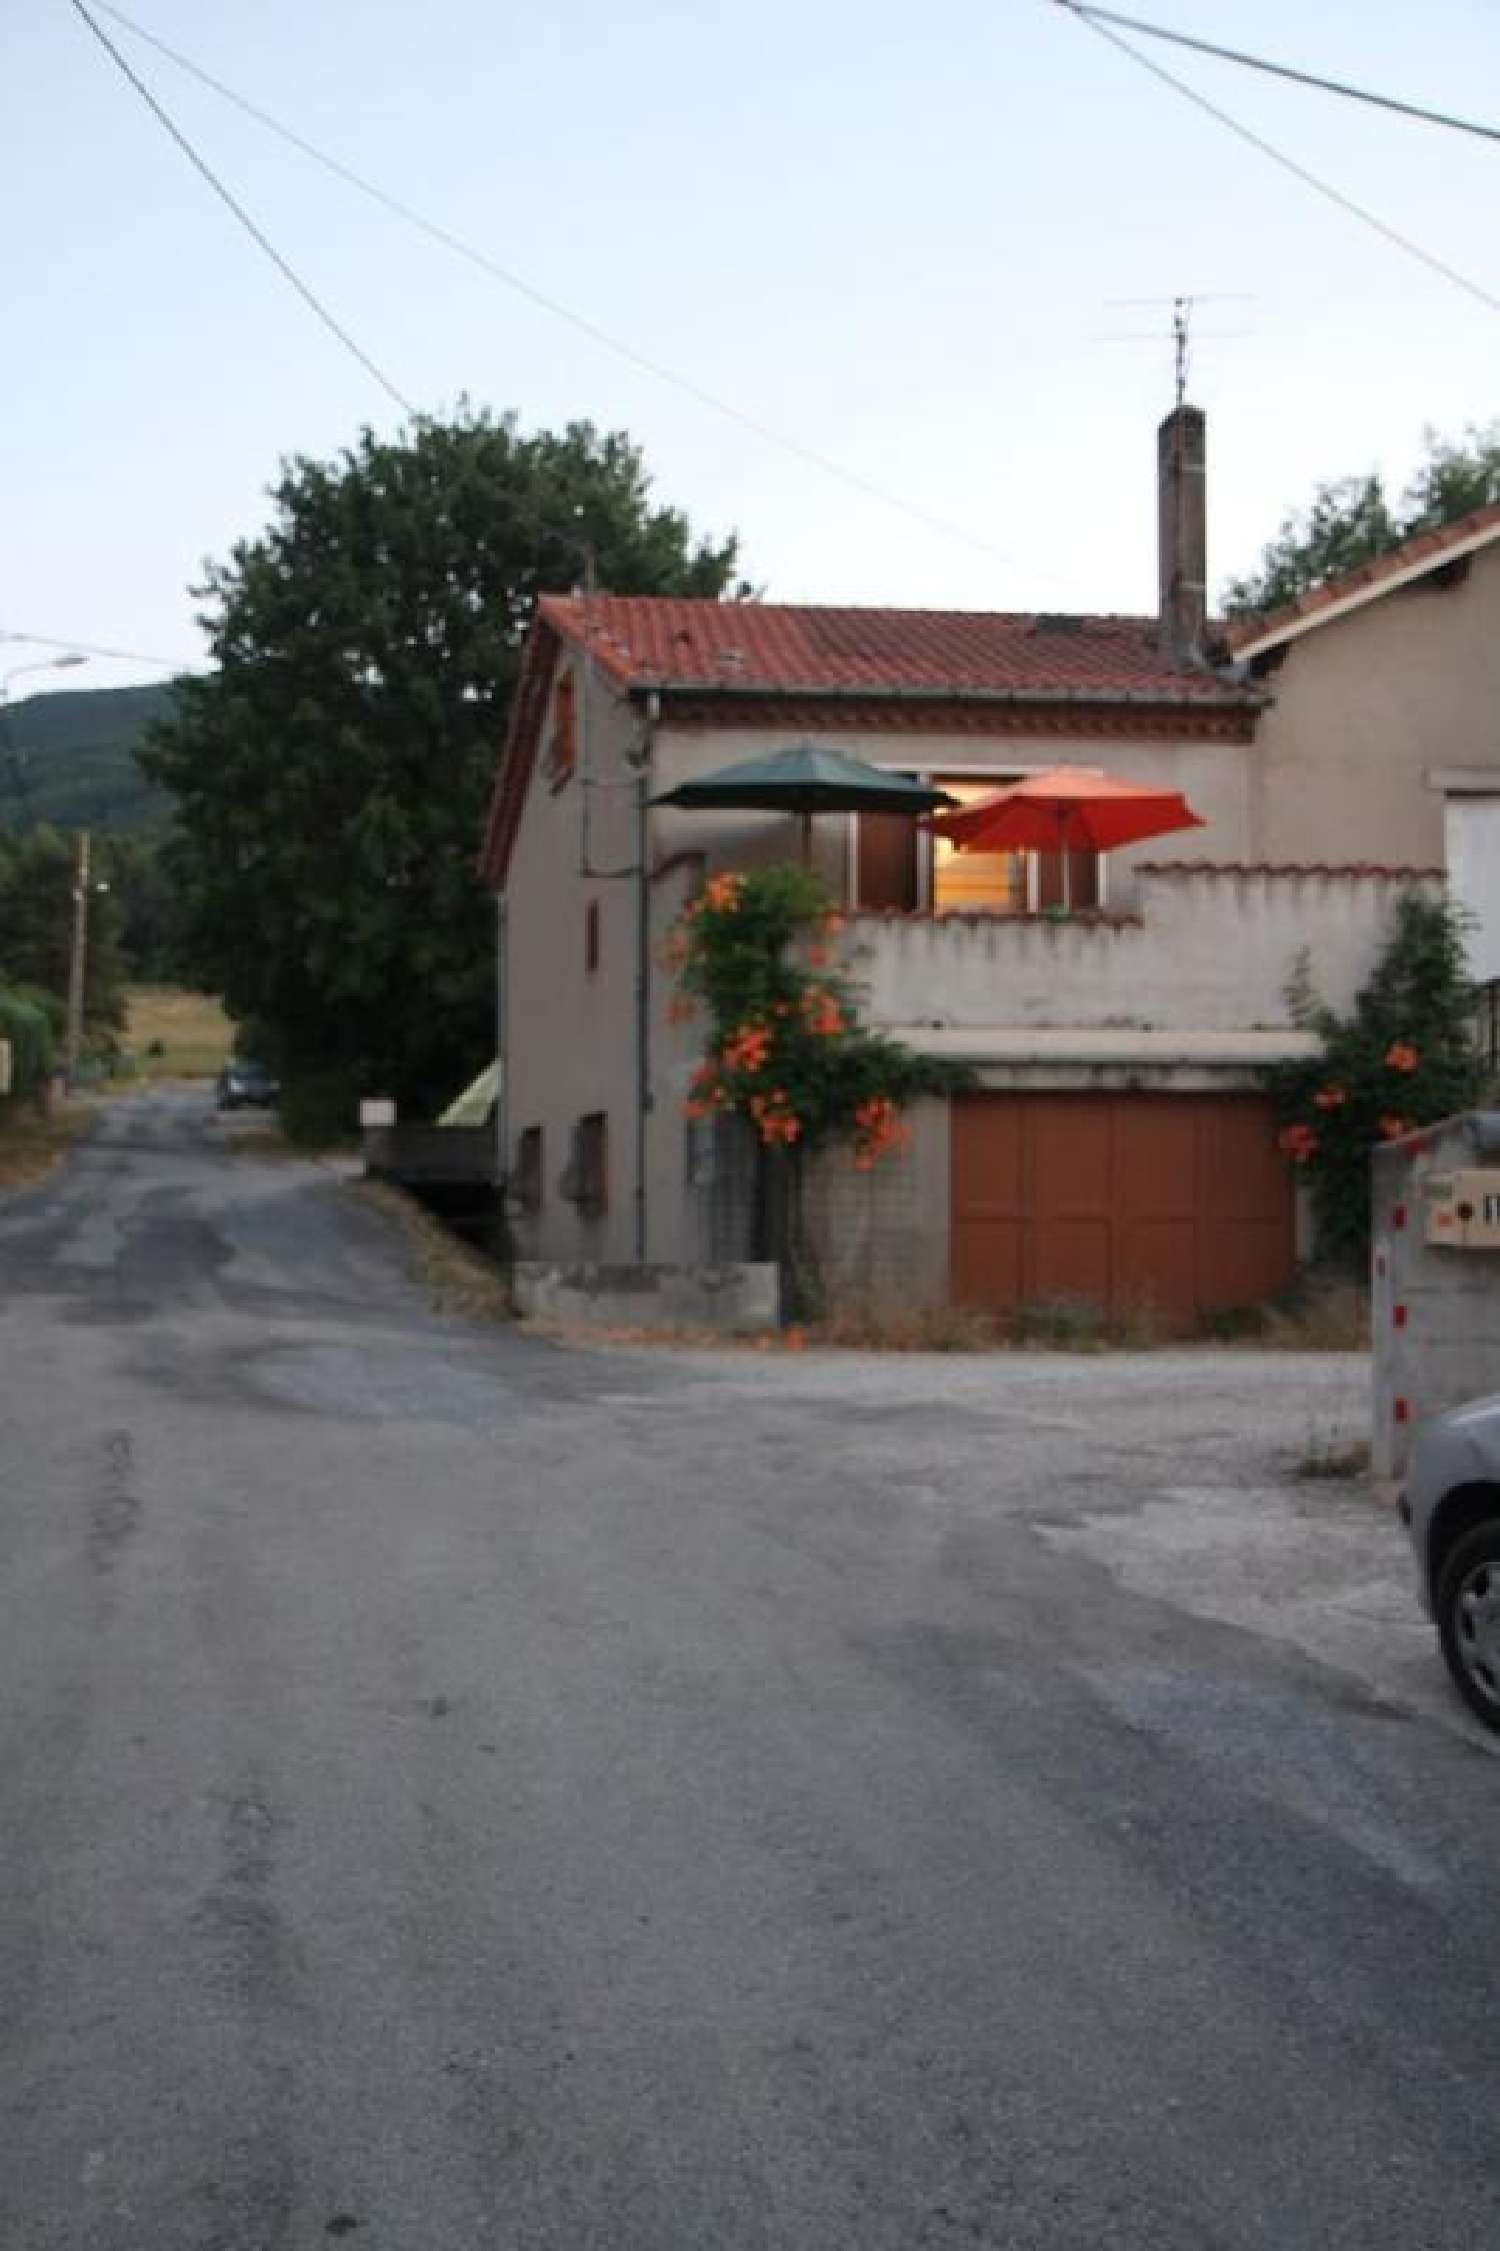  à vendre maison Saint-Amans-Soult Tarn 3